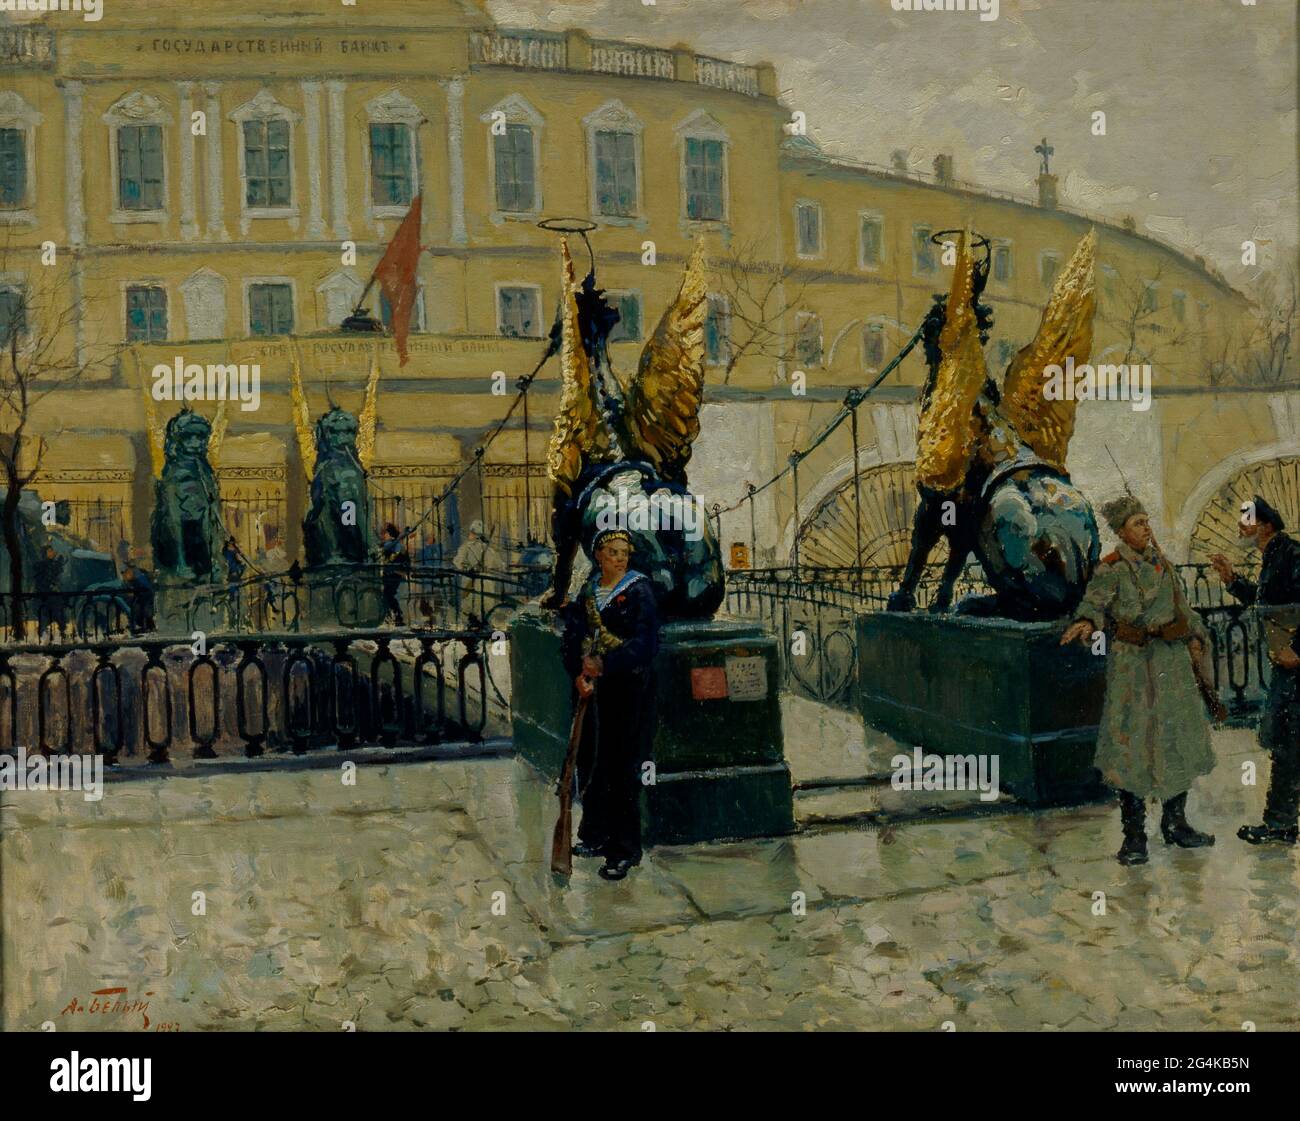 Revolutionäre Matrosen, die die Petrograder Staatsbank bewachen, 1927. Gefunden in der Sammlung des Staatlichen Zentralen Militärmuseums, Moskau. Stockfoto